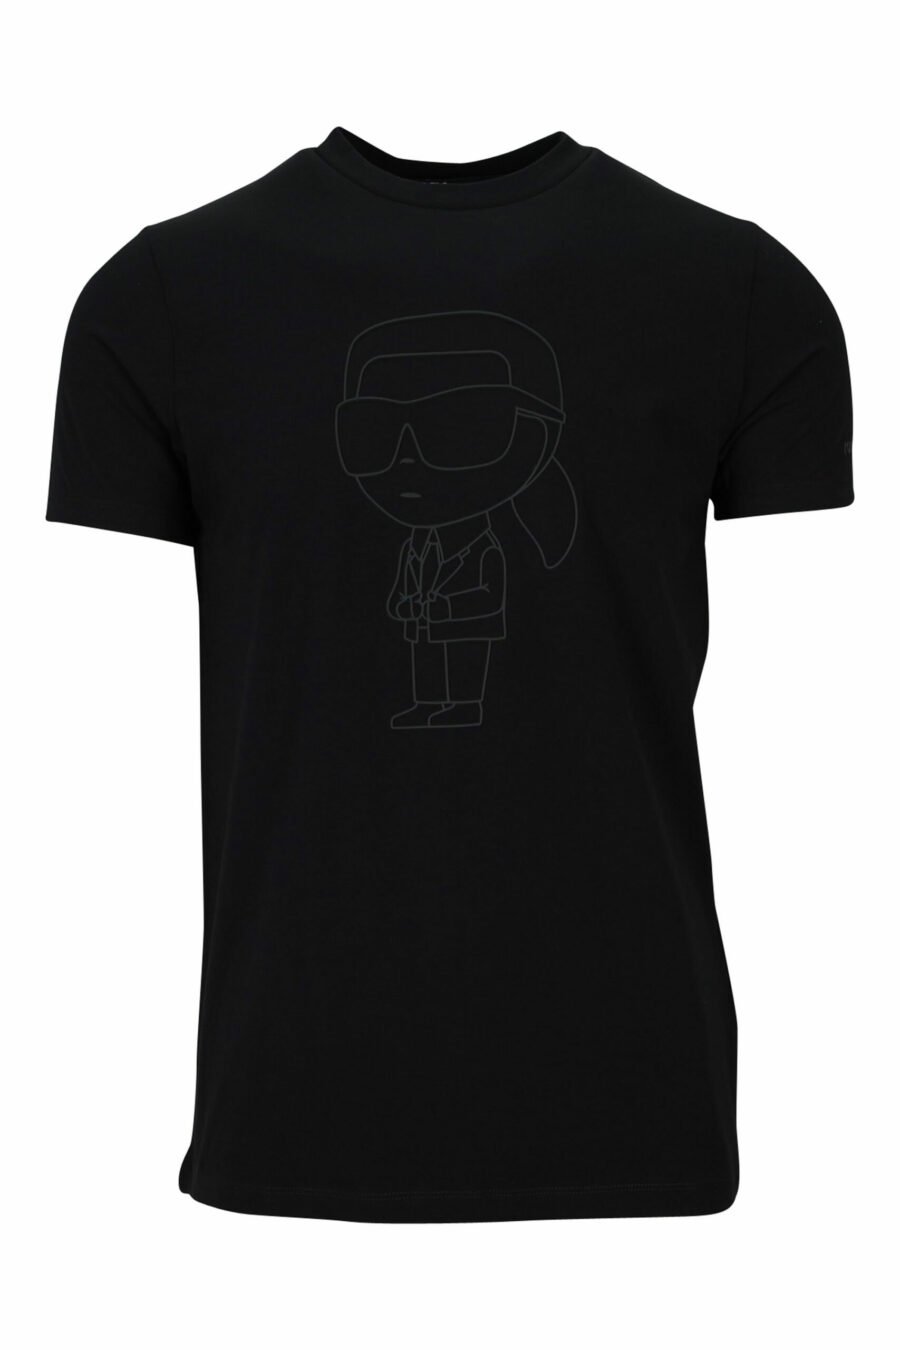 Camiseta negra con maxilogo monocromático de goma - 4062226401425 scaled